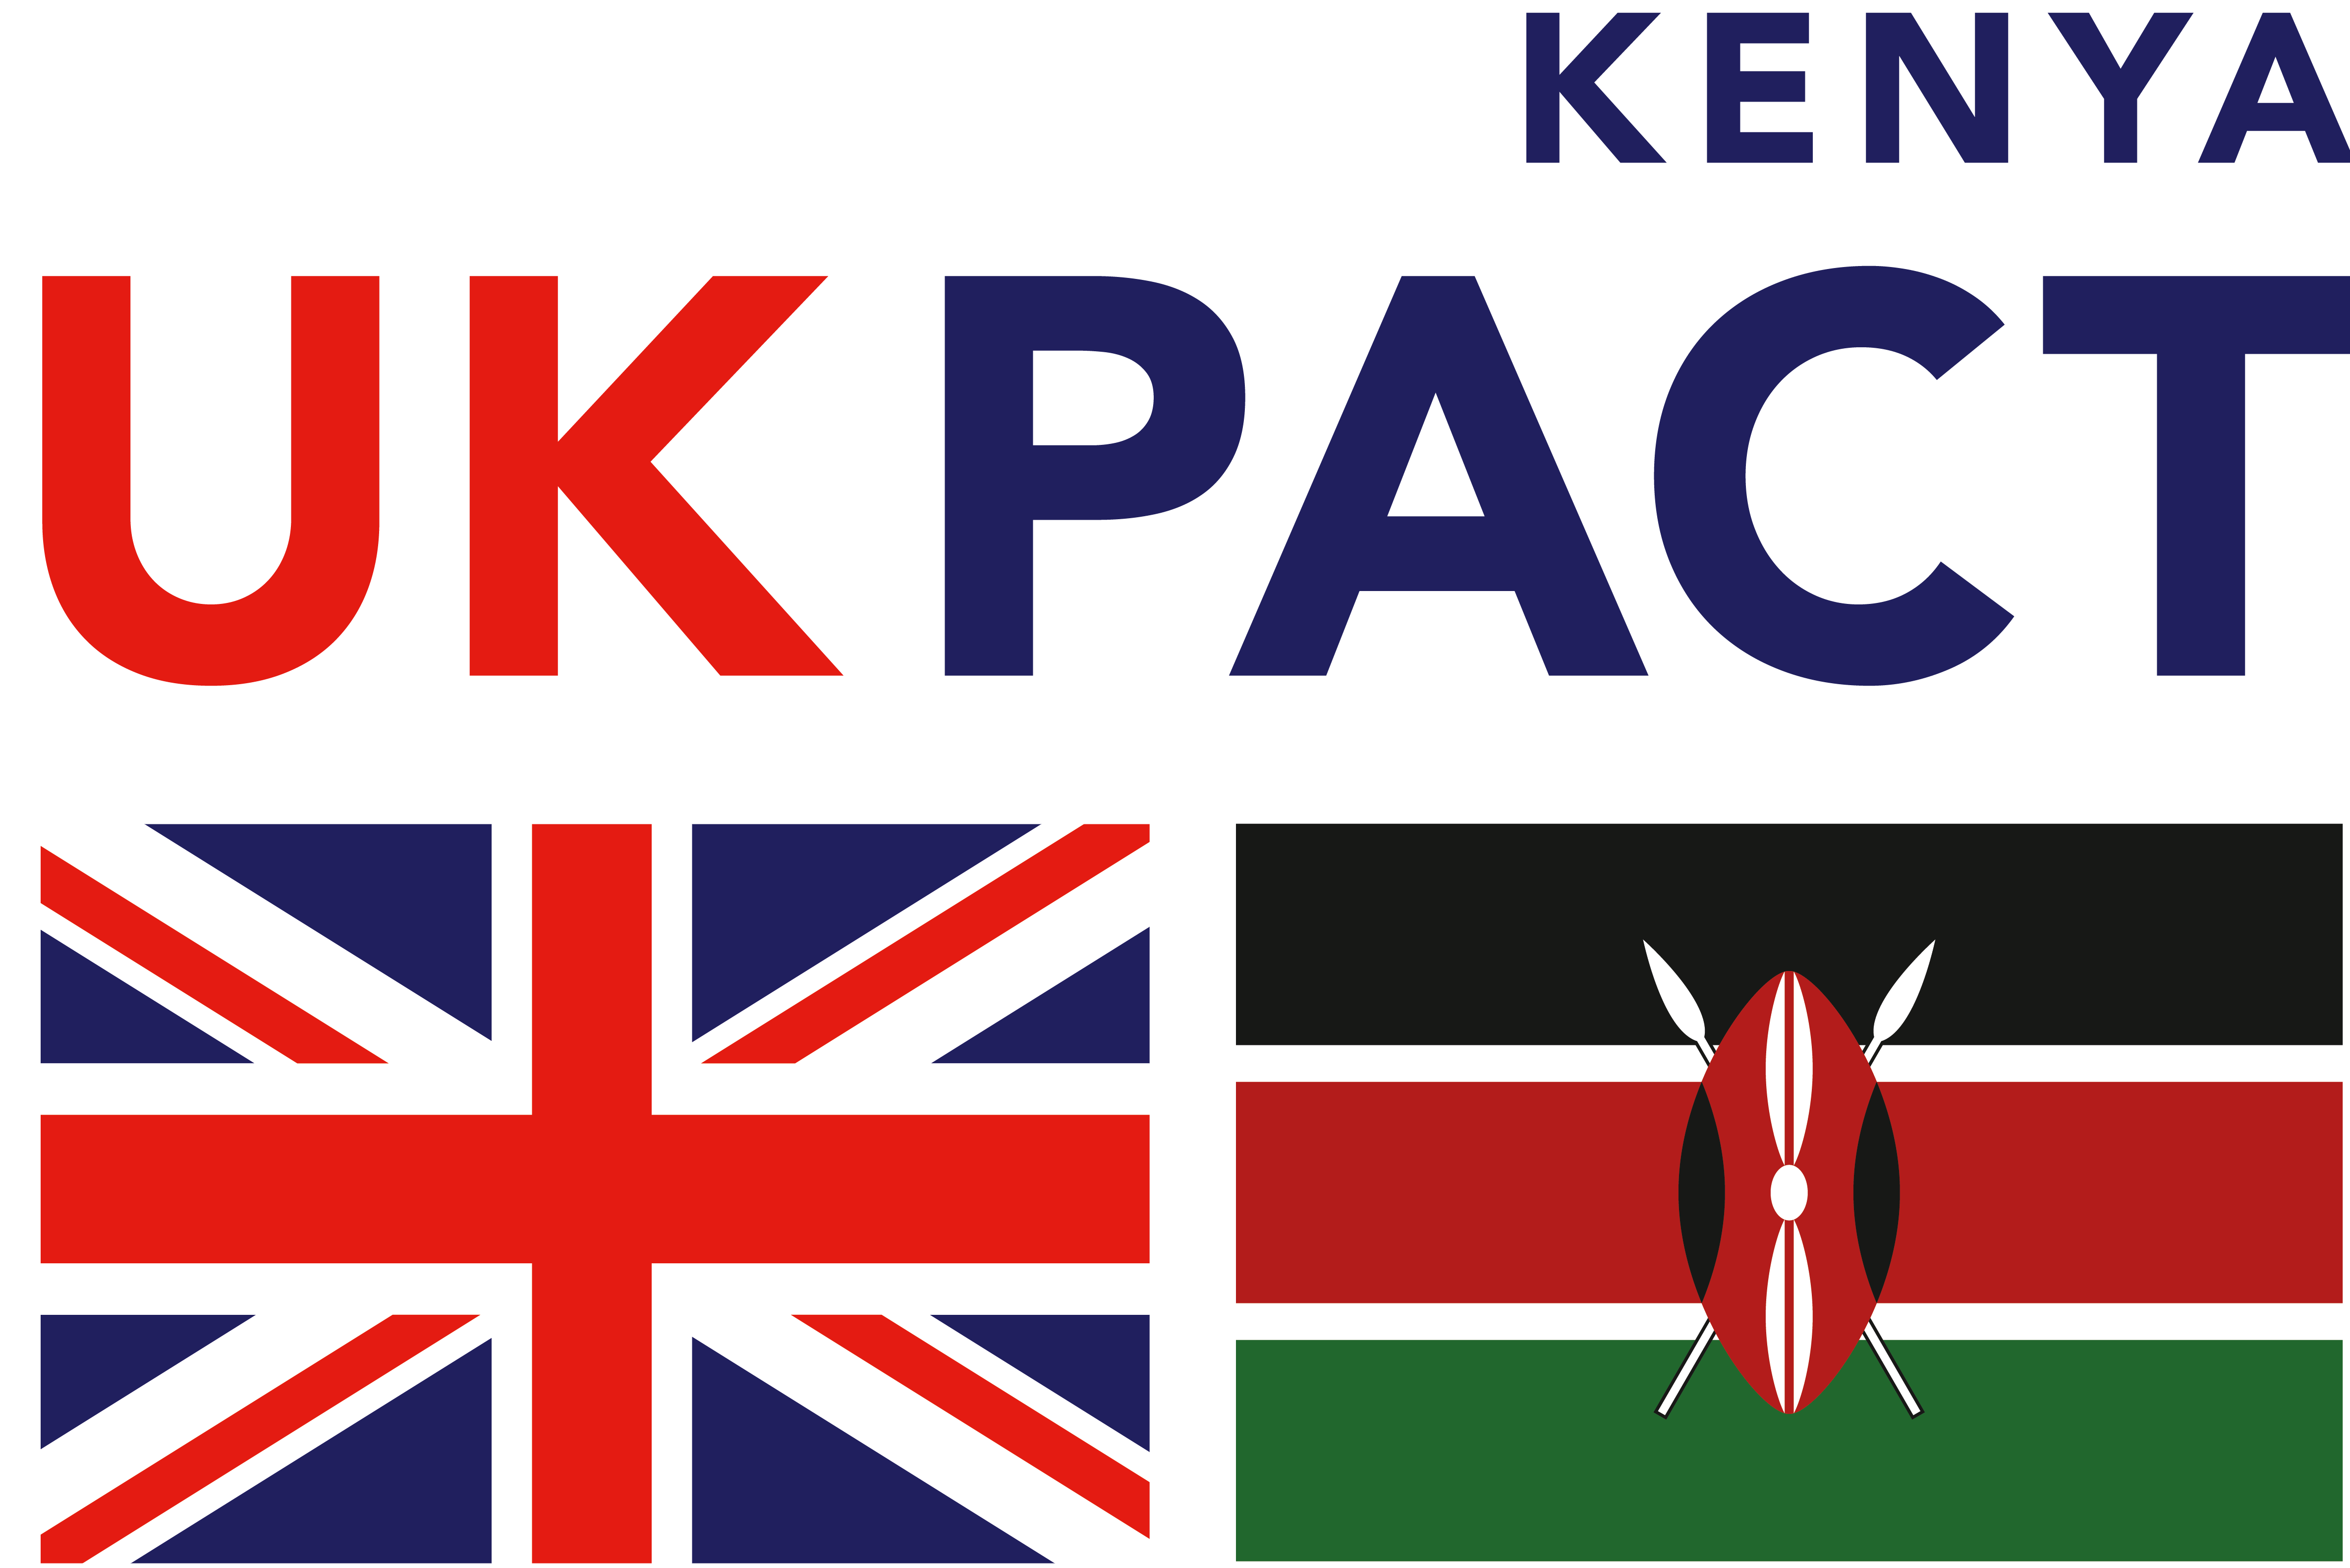 UK PACT Kenya